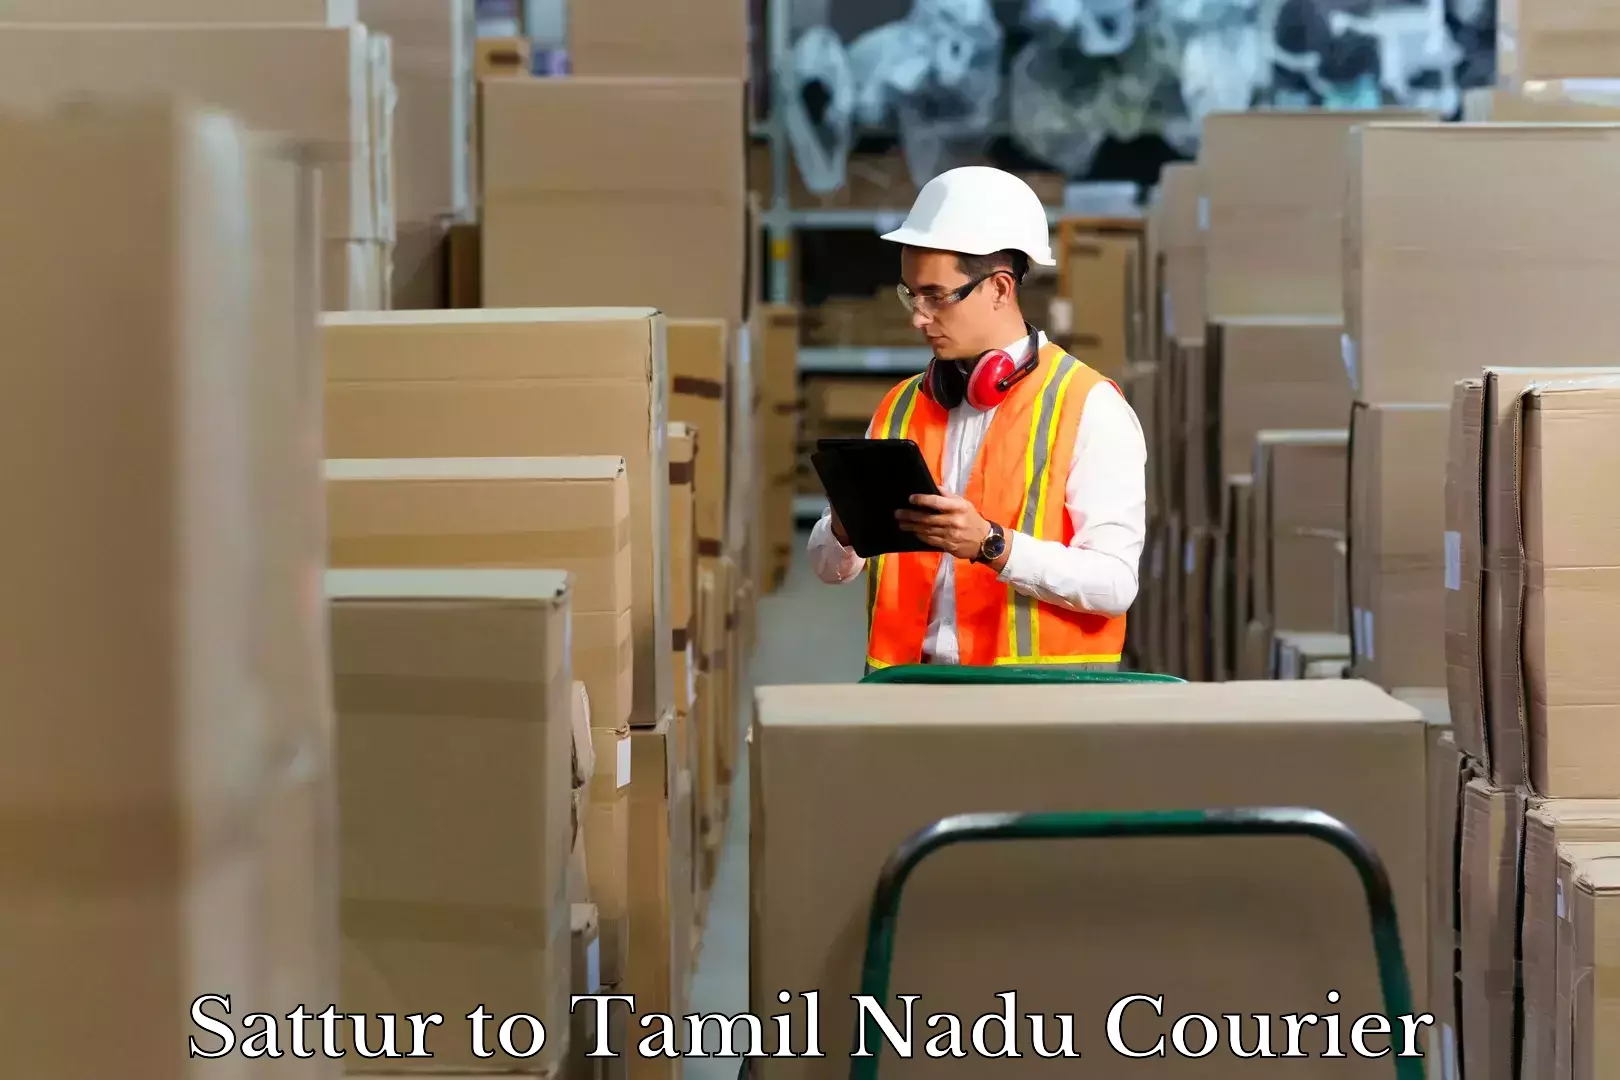 Door-to-door baggage service in Sattur to Tamil Nadu